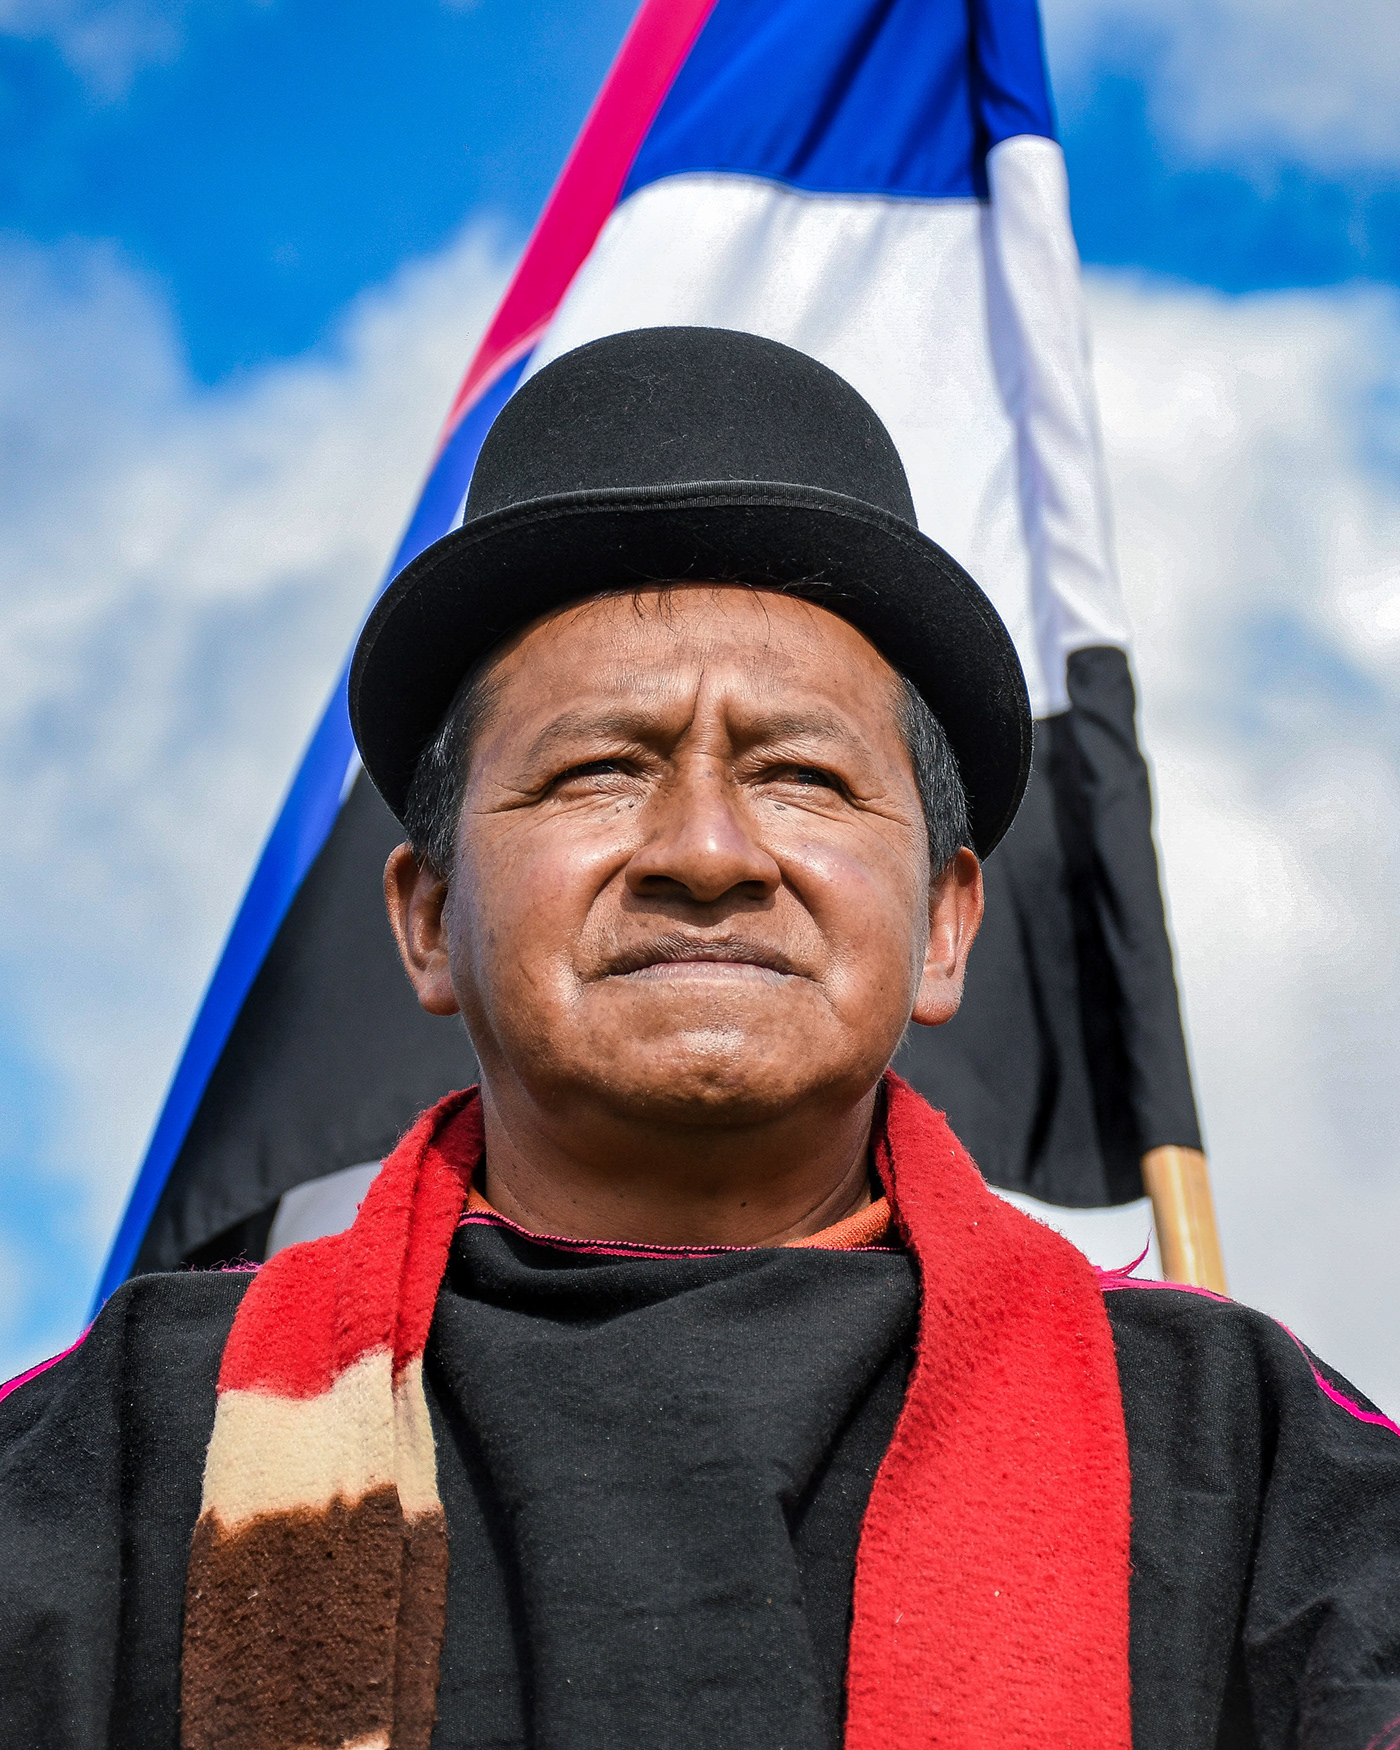 AZUL Cauca colombia misak Nikon Nikon Photography portait Pueblos indígenas retratos